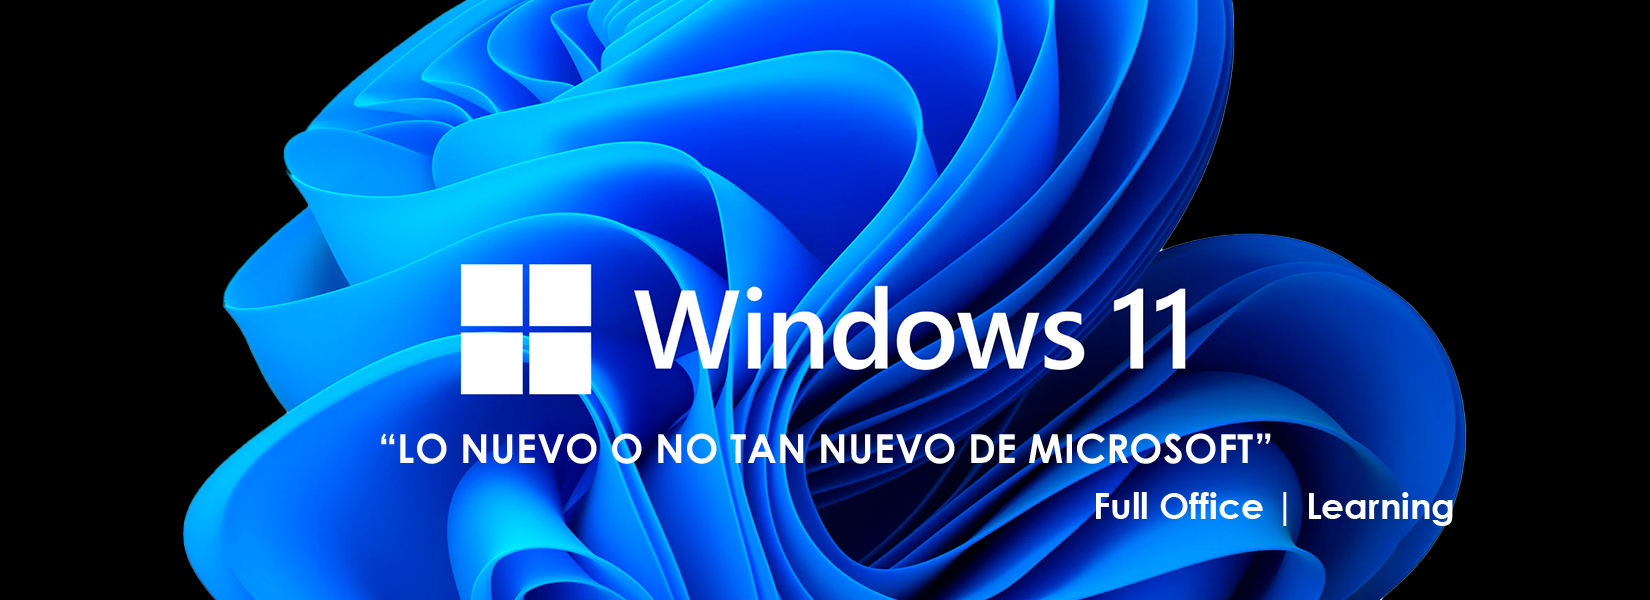 Windows 11, lo nuevo o no tan nuevo de Microsoft